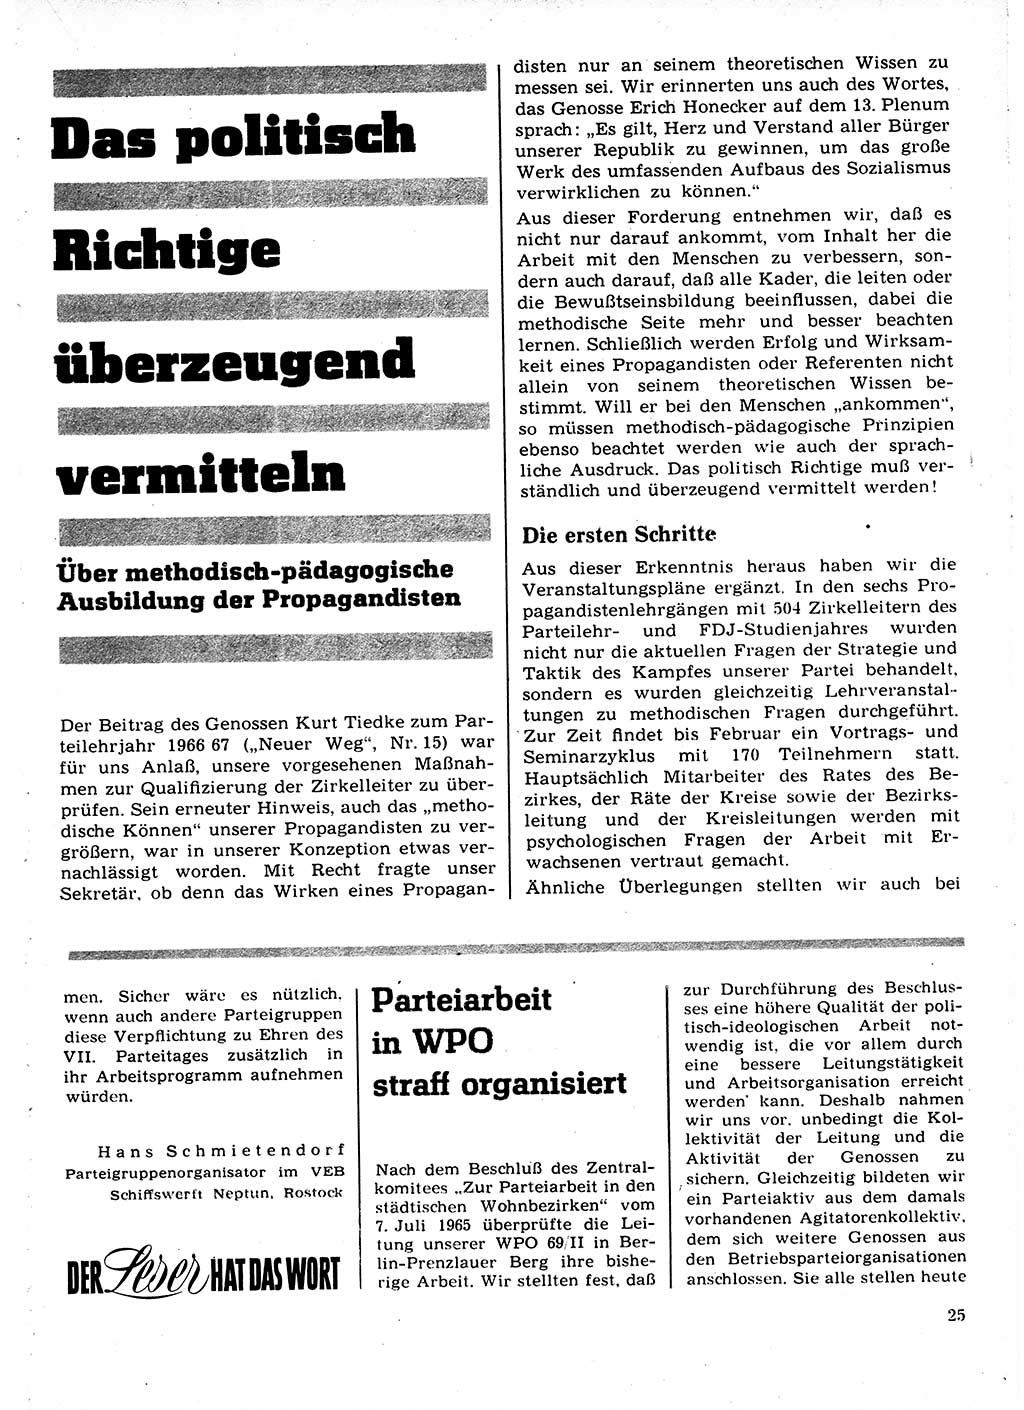 Neuer Weg (NW), Organ des Zentralkomitees (ZK) der SED (Sozialistische Einheitspartei Deutschlands) für Fragen des Parteilebens, 22. Jahrgang [Deutsche Demokratische Republik (DDR)] 1967, Seite 25 (NW ZK SED DDR 1967, S. 25)